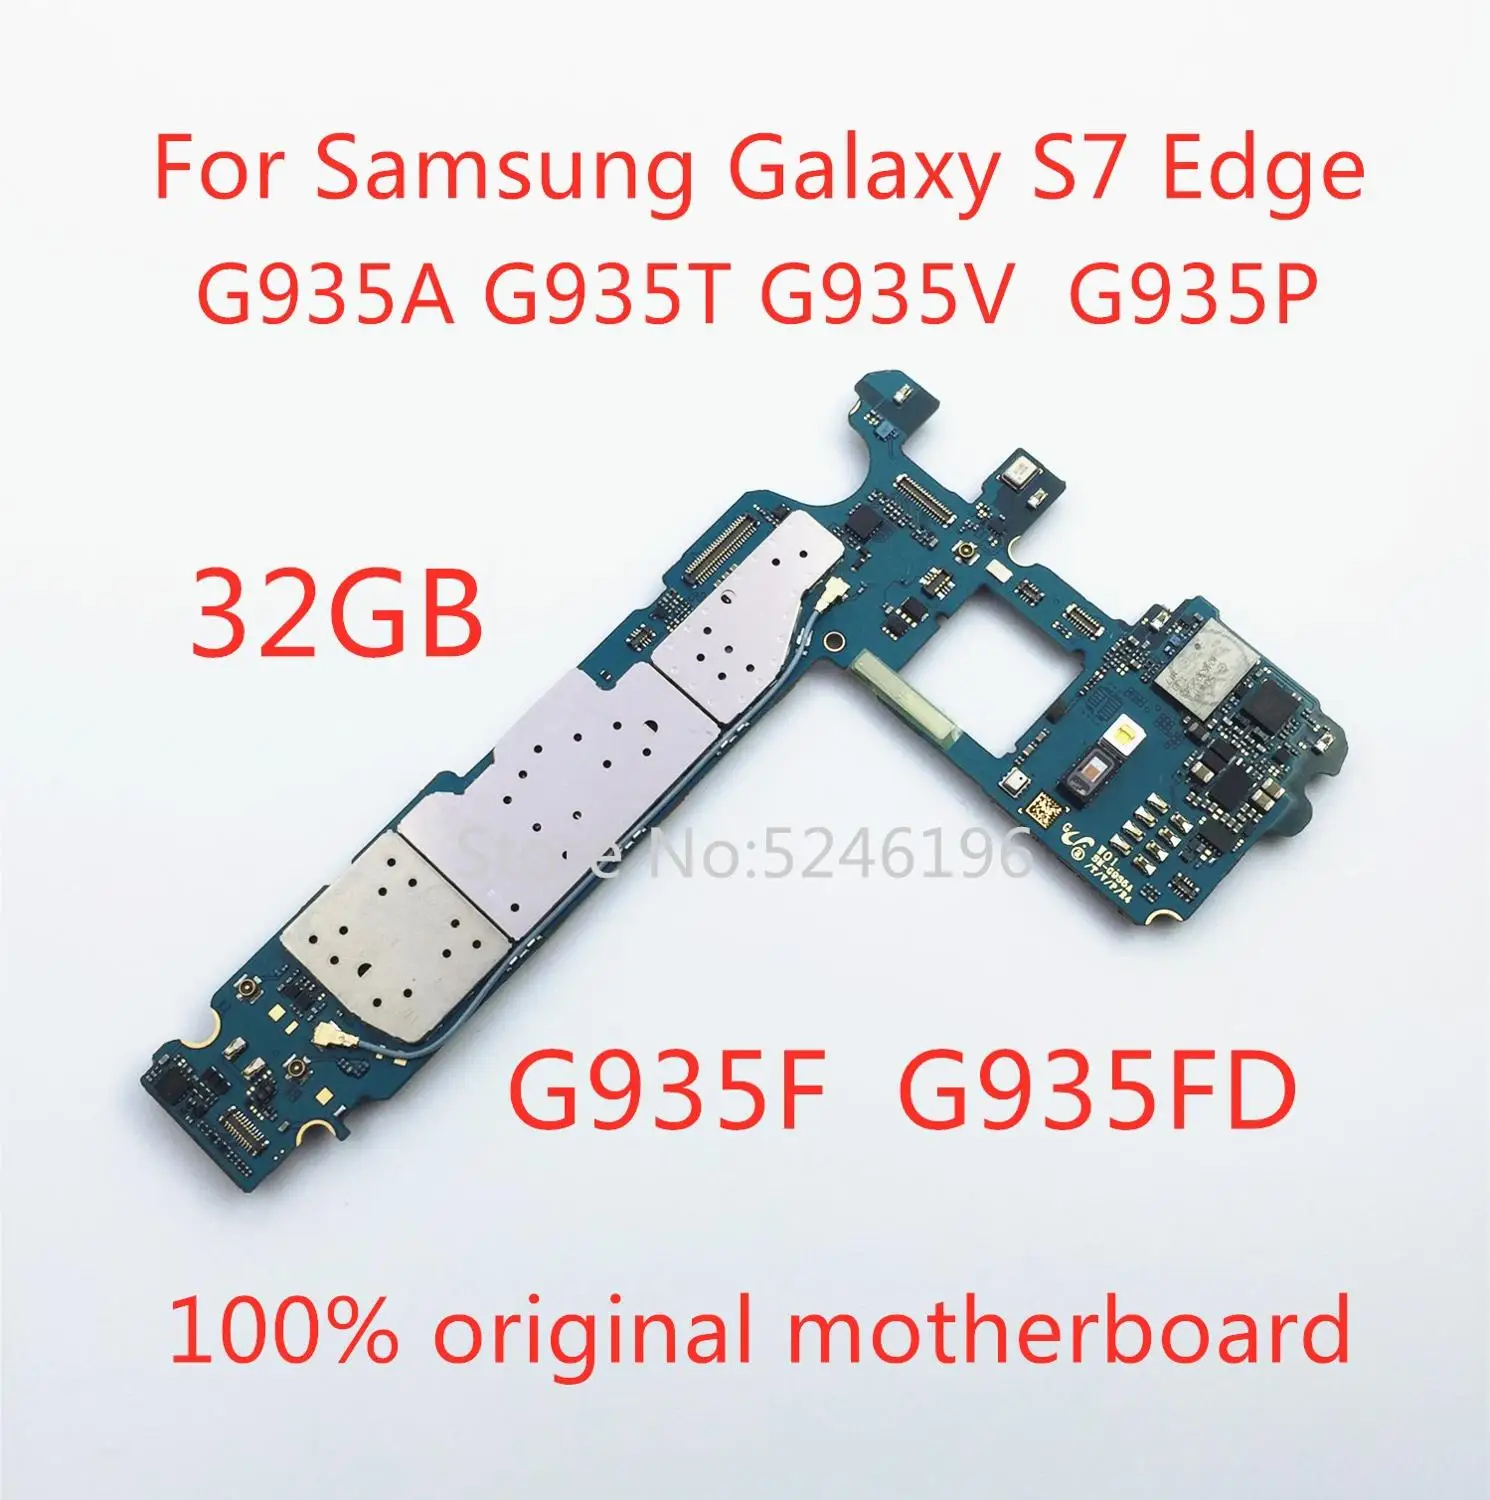 Recambio de placa base original desbloqueada para Samsung Galaxy S7 edge, G935A, G935T, G935V, G935P, G935F, G935FD, 32GB